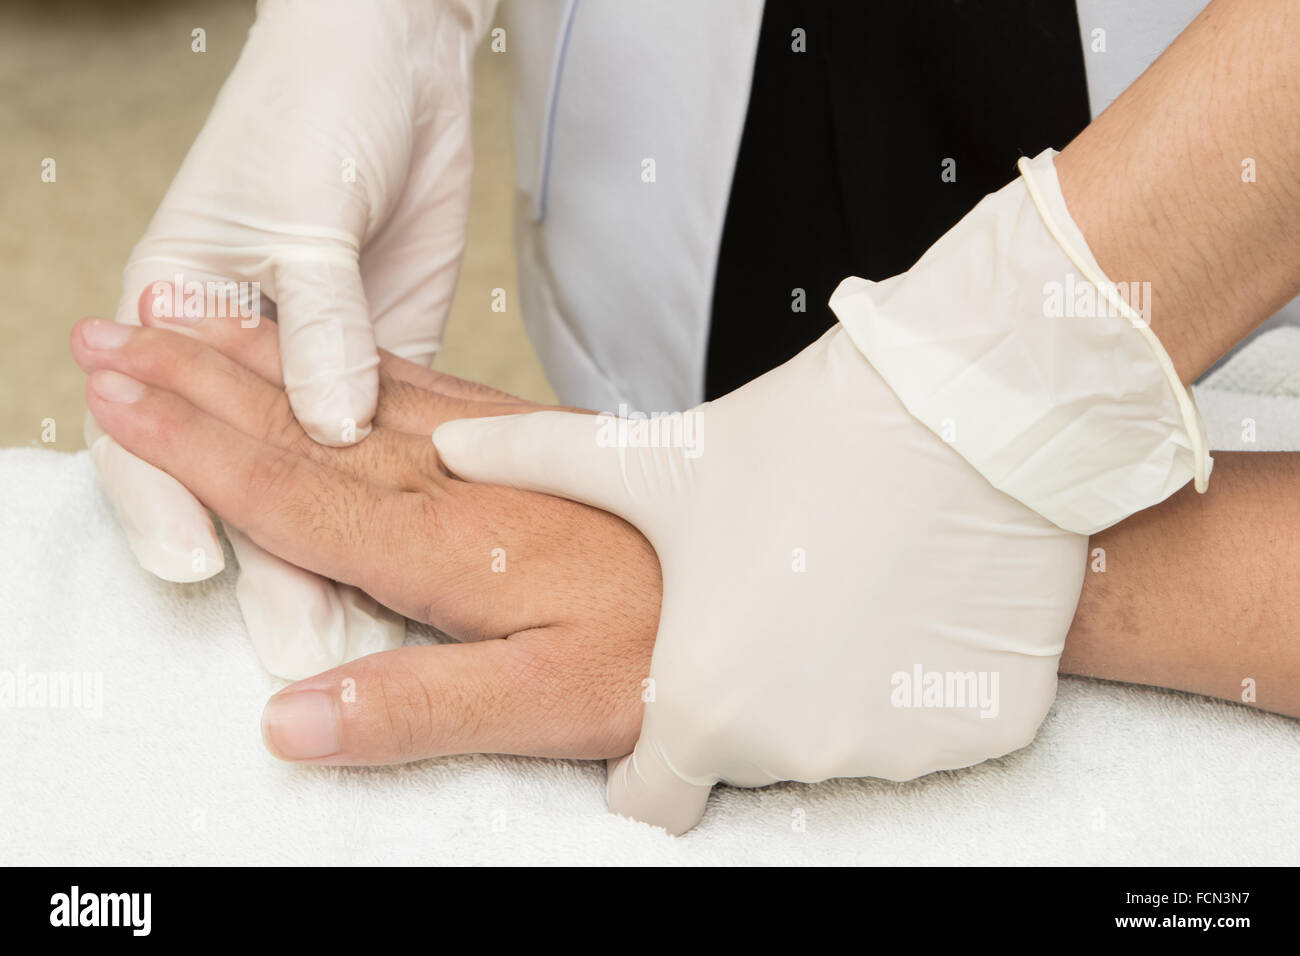 Пальцы после гипса. Реабилитация перелома кисти. Реабилитация кисти после перелома. Массаж при переломе кисти руки. Массаж при переломе лучезапястного сустава.